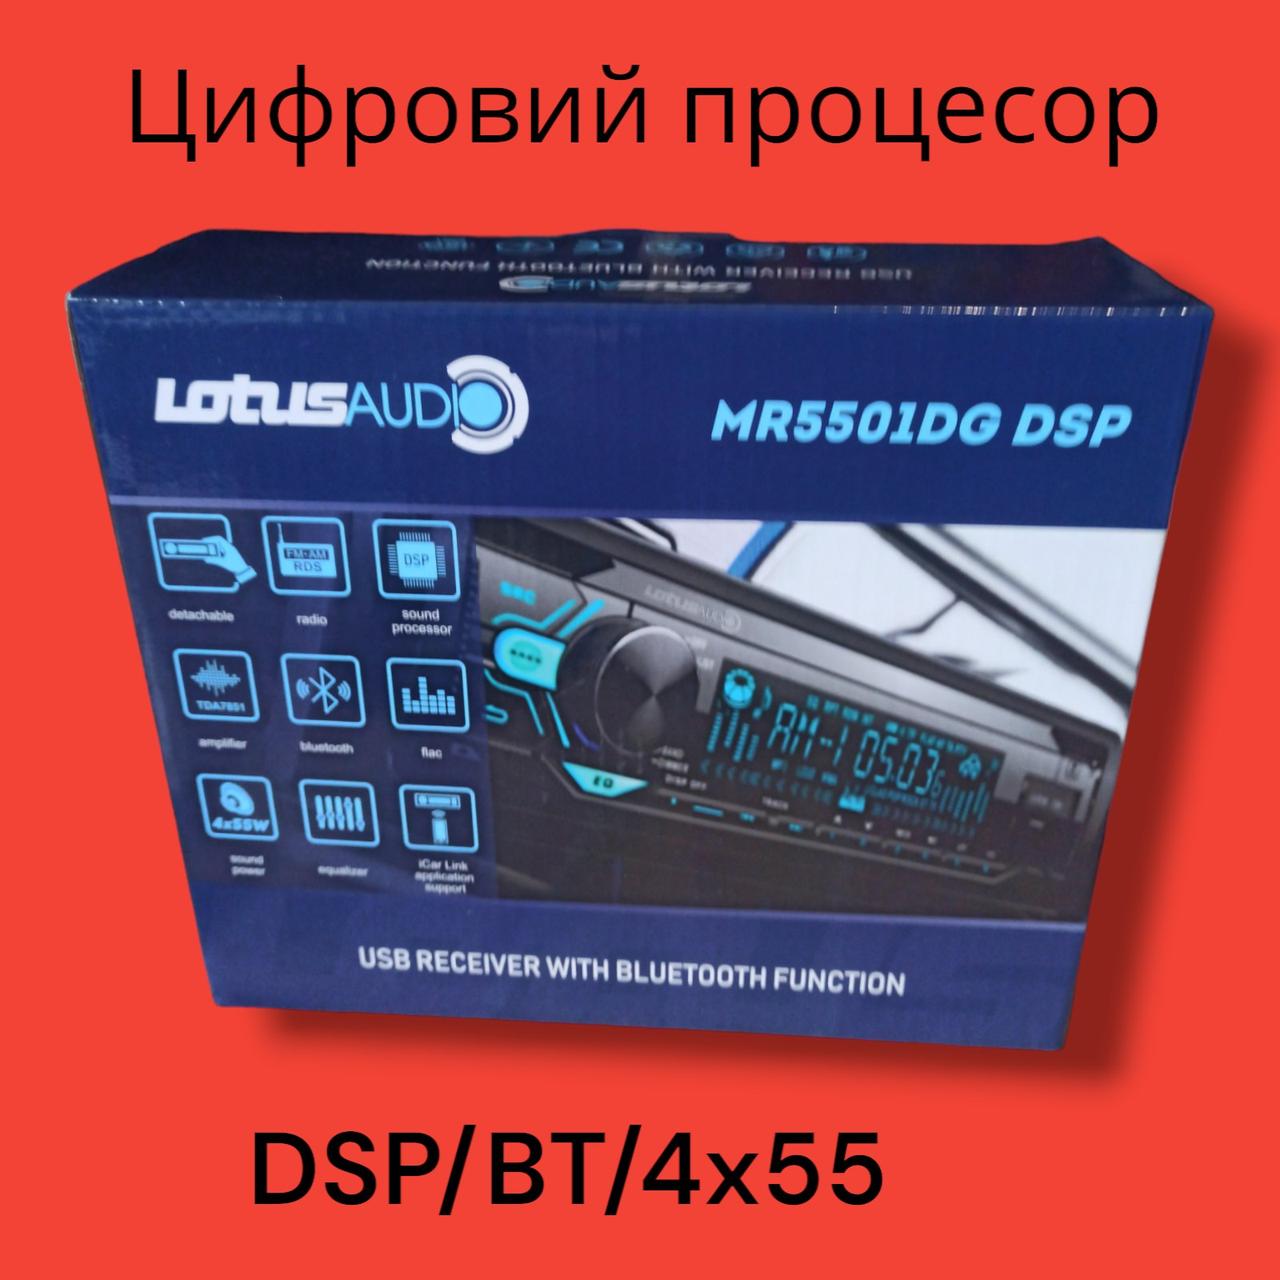 Автомобильная цифрова магнитола LOTUS MR5501DG DSP (Bluetooth)